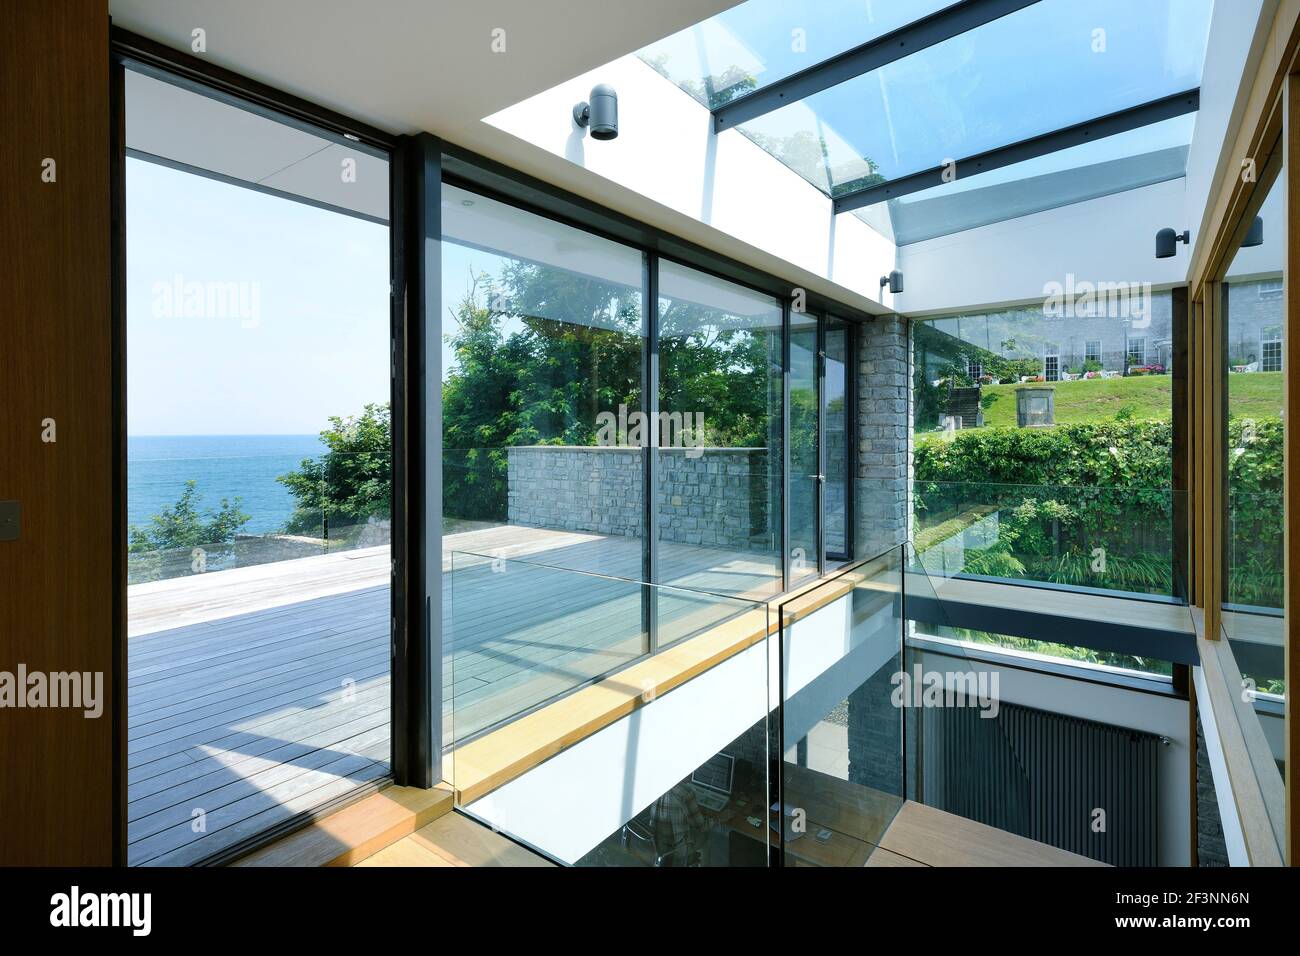 Das Innere eines modernen Hauses an der Küste. Große Glasschiebetüren öffnen sich. Raumhohe Glaspaneele. Ein flaches Gebäude in einer Lage am Meer Stockfoto